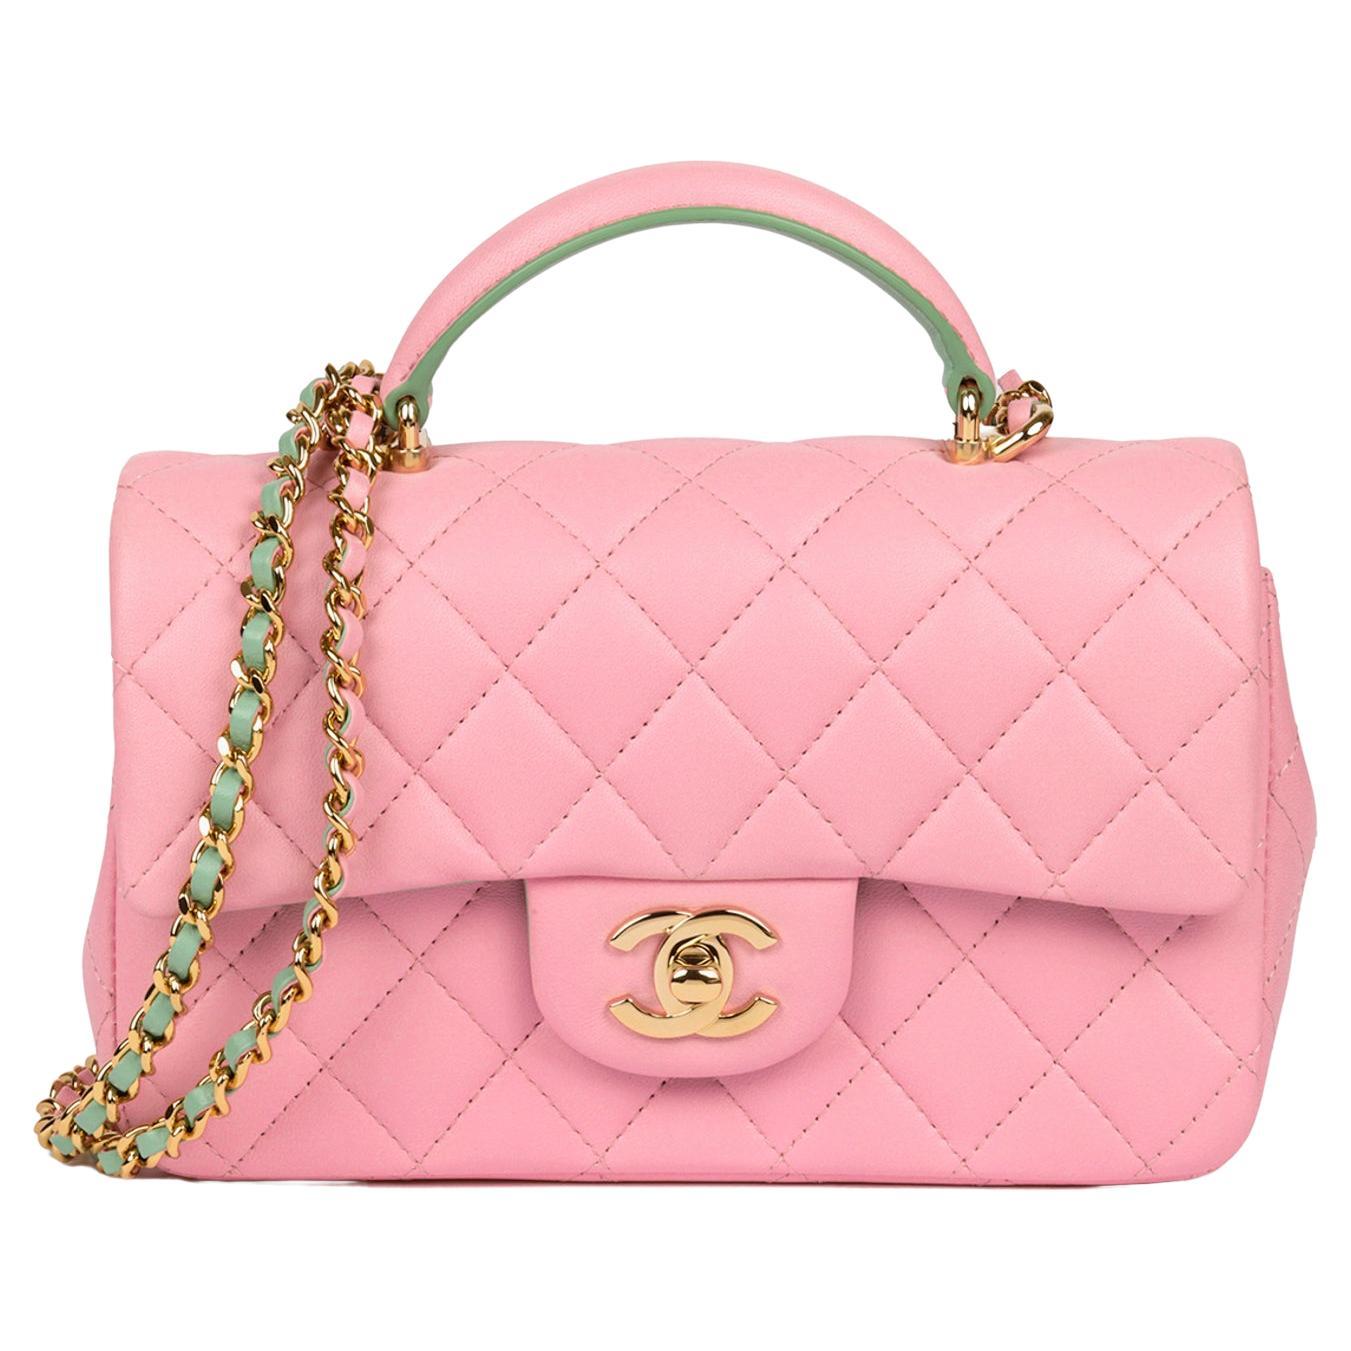 Chanel - Mini sac à rabat rectangulaire en cuir d'agneau matelassé rose et vert avec poignée supérieure